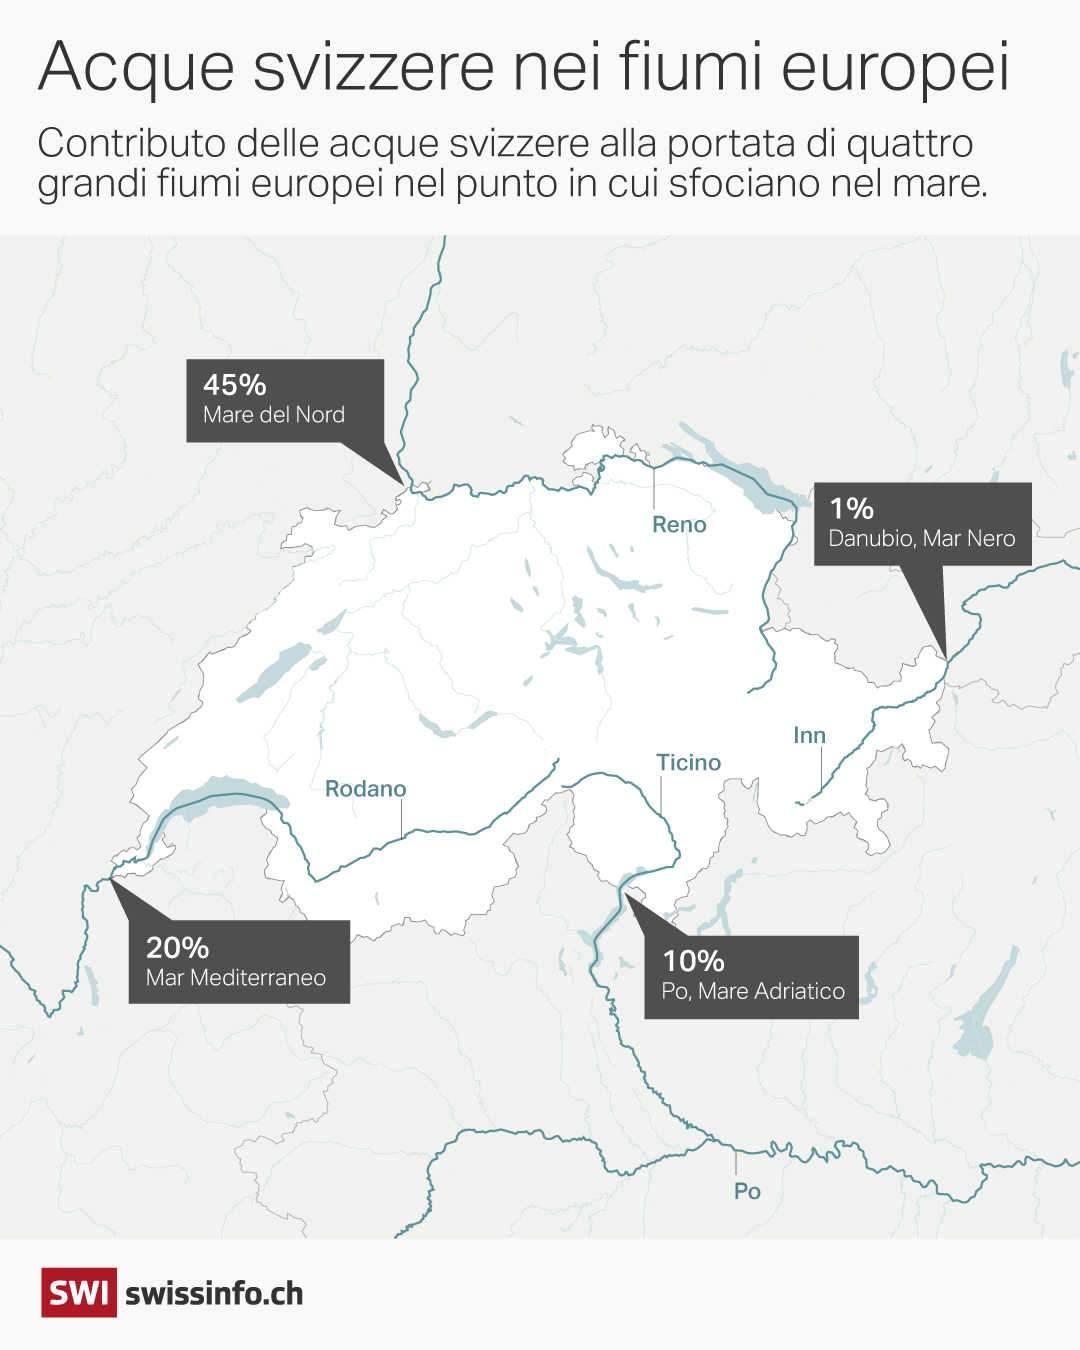 mappa che raffigura quattro fiumi europei che nascono in svizzera